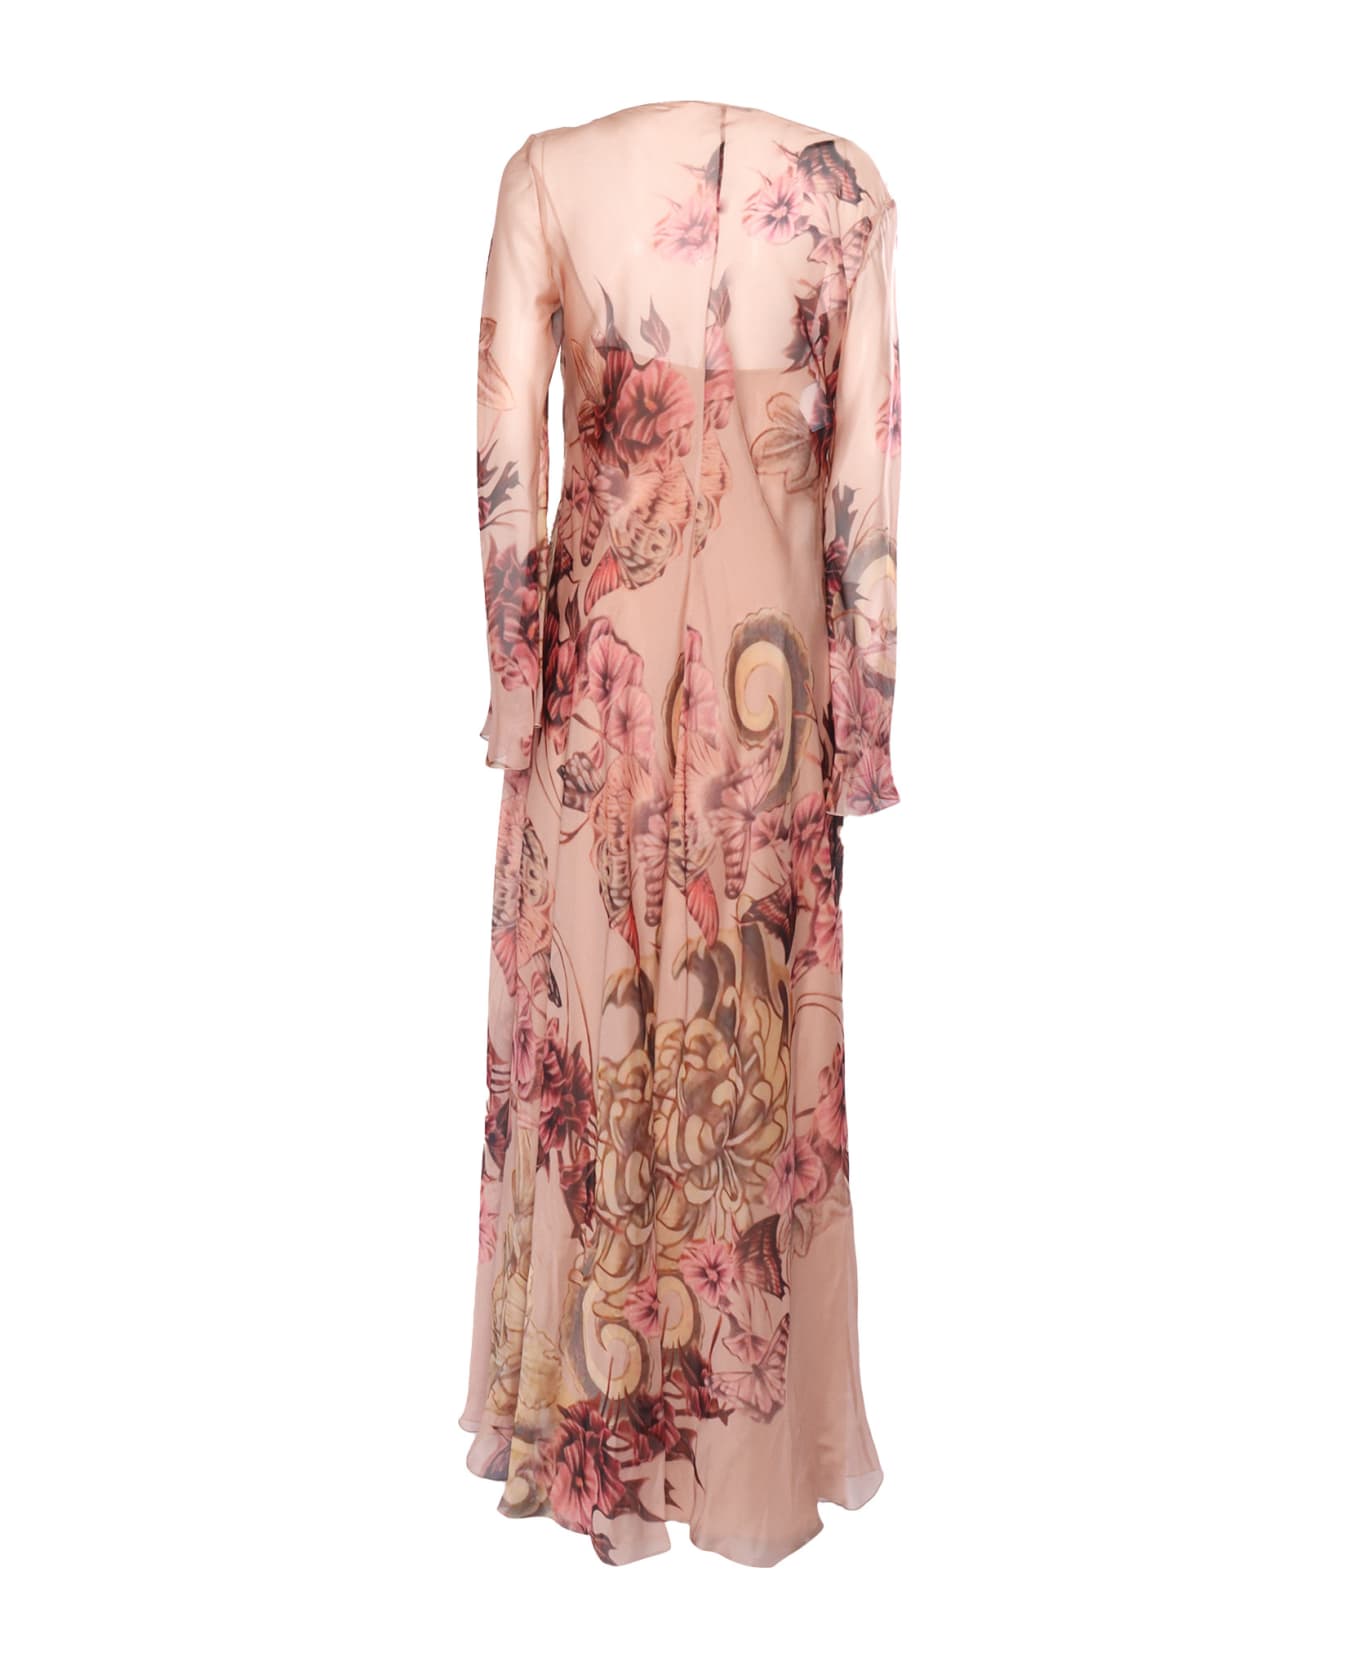 Alberta Ferretti Silk Floral Dress - PINK